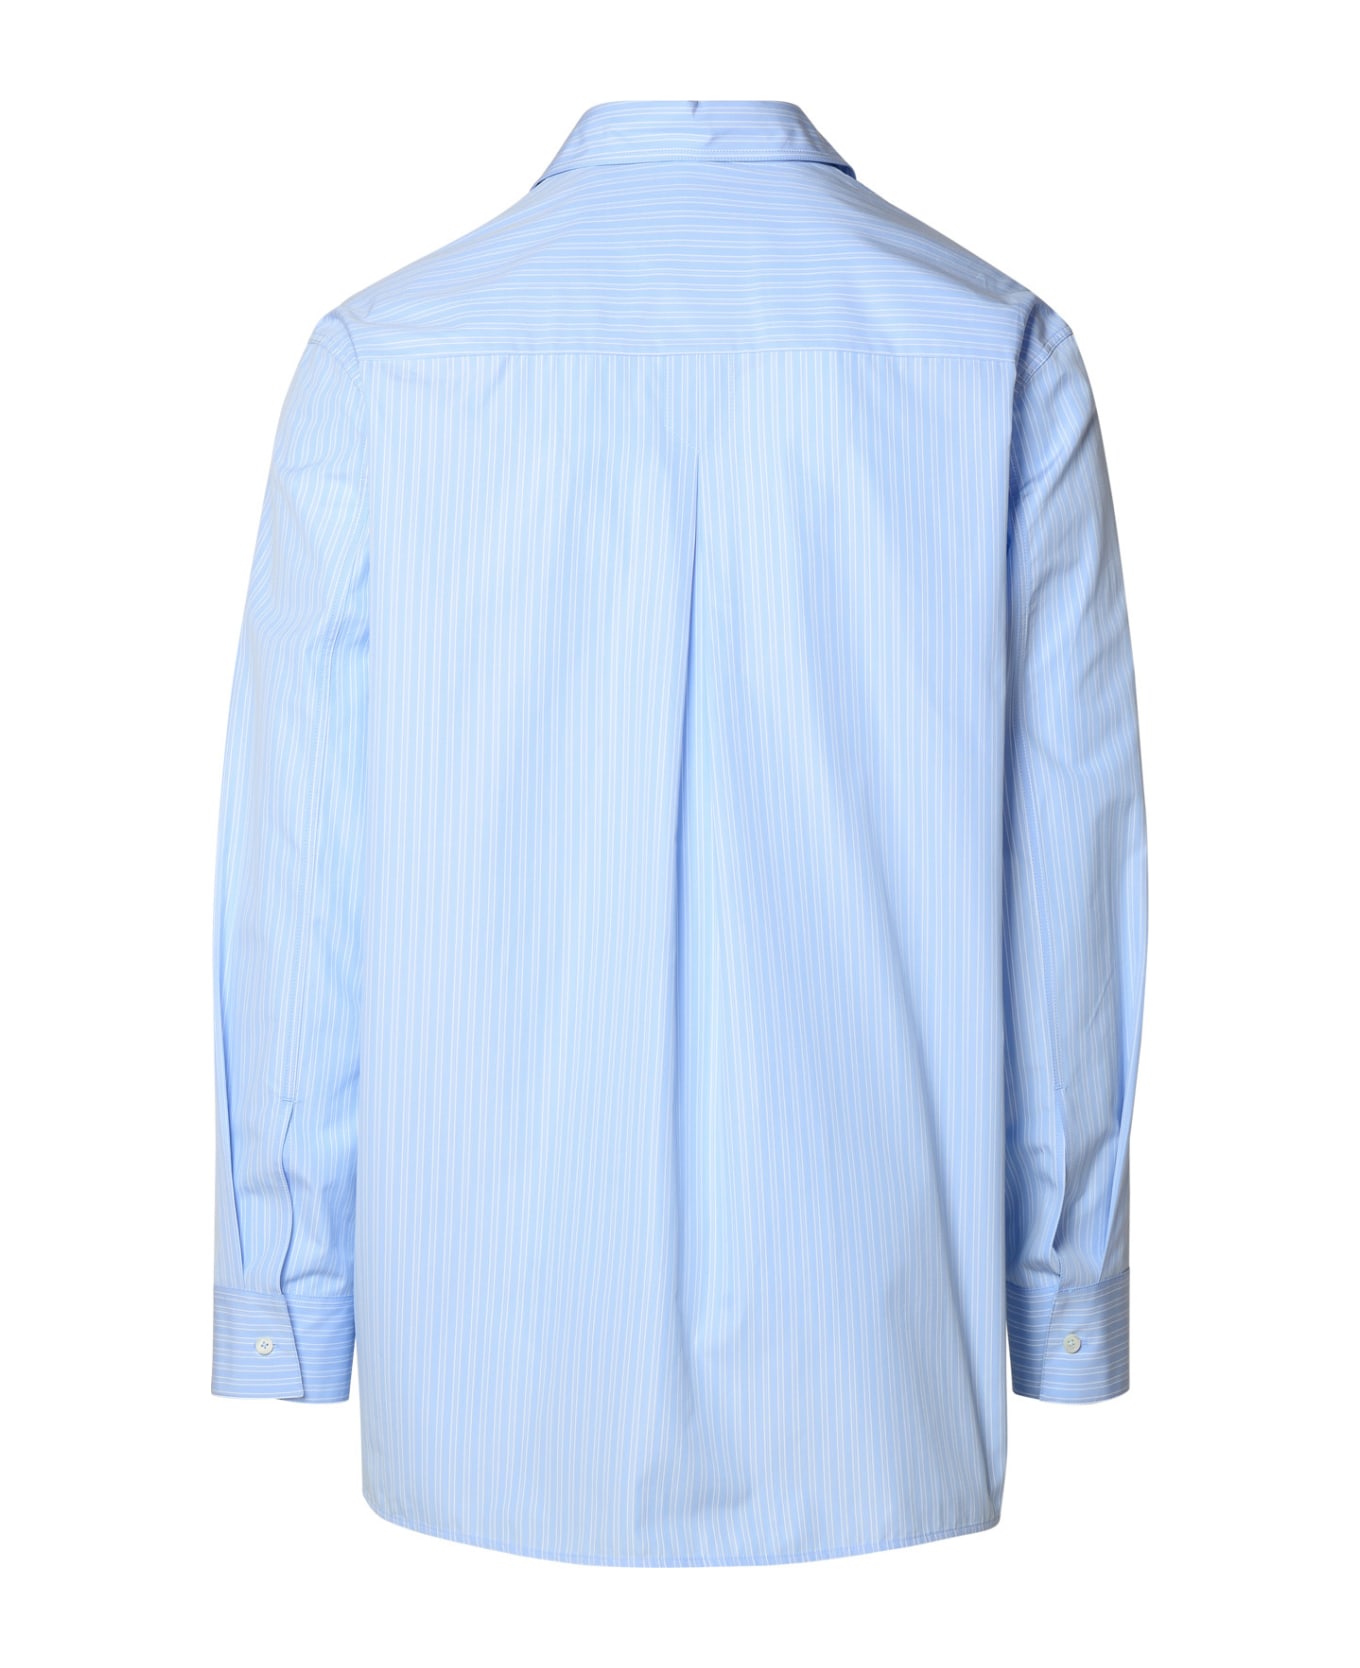 Jil Sander Light Blue Cotton Shirt - Light Blue